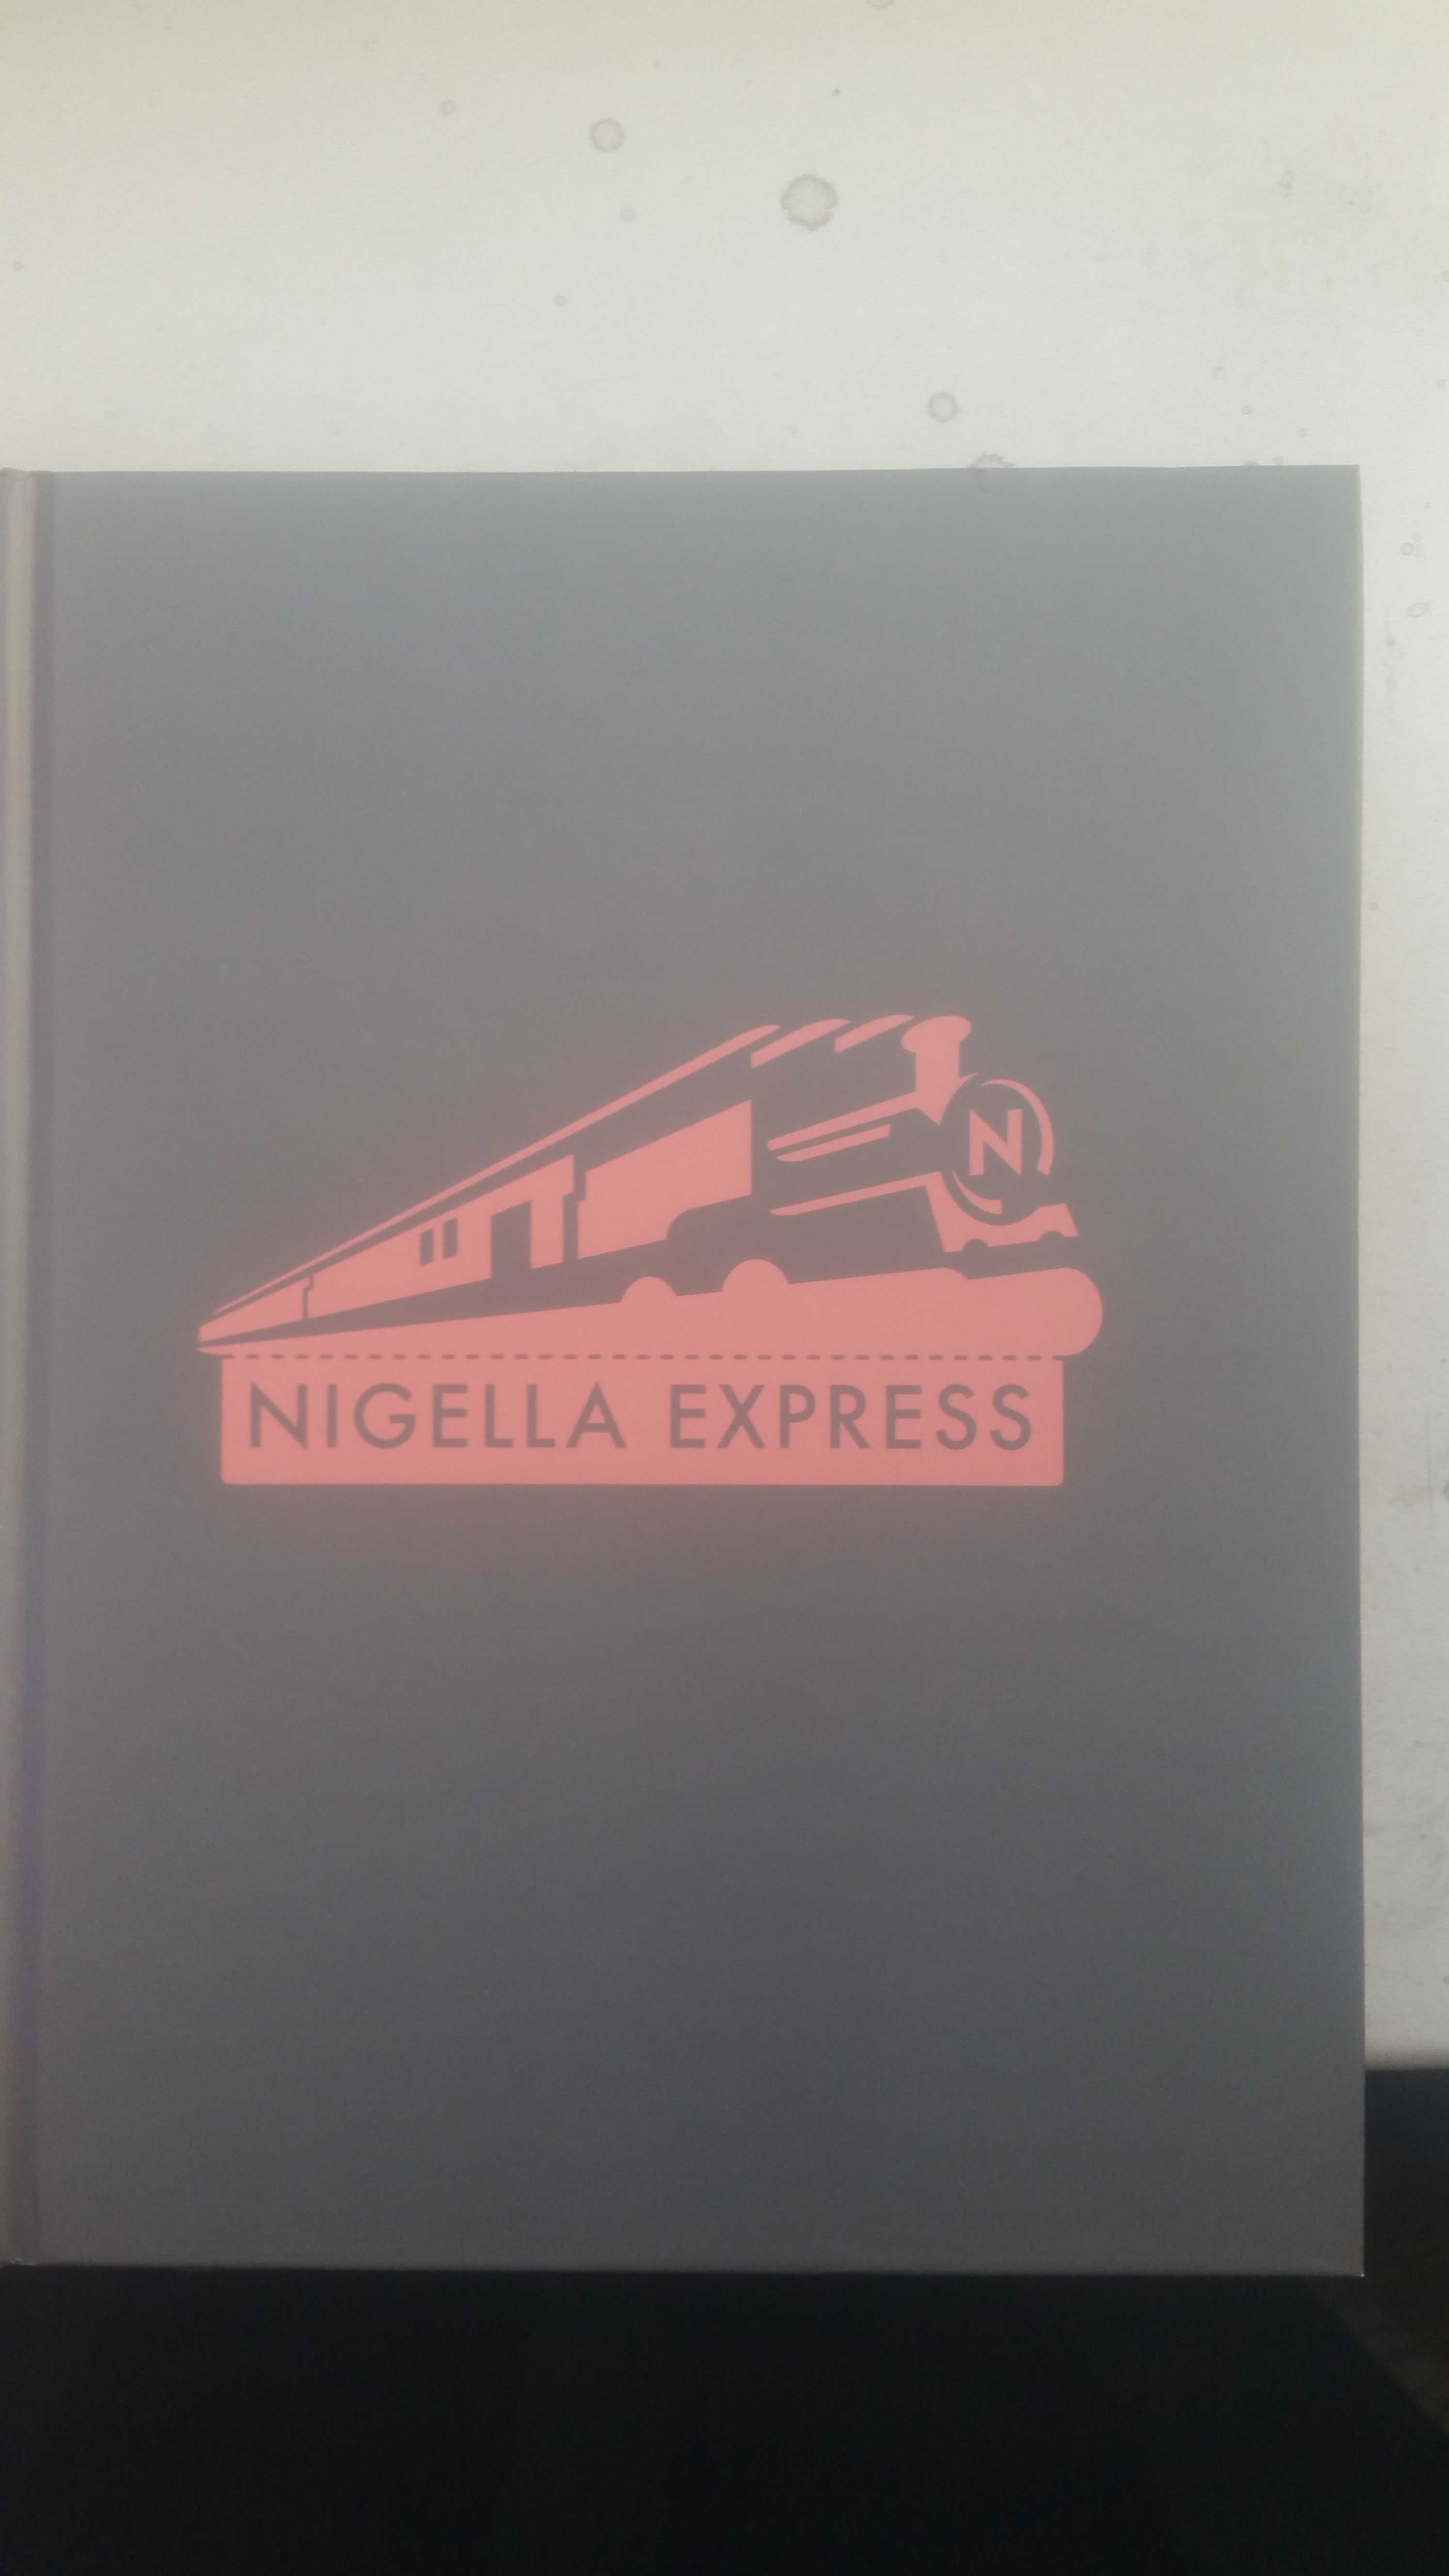 Nigella Lawson Nigella express